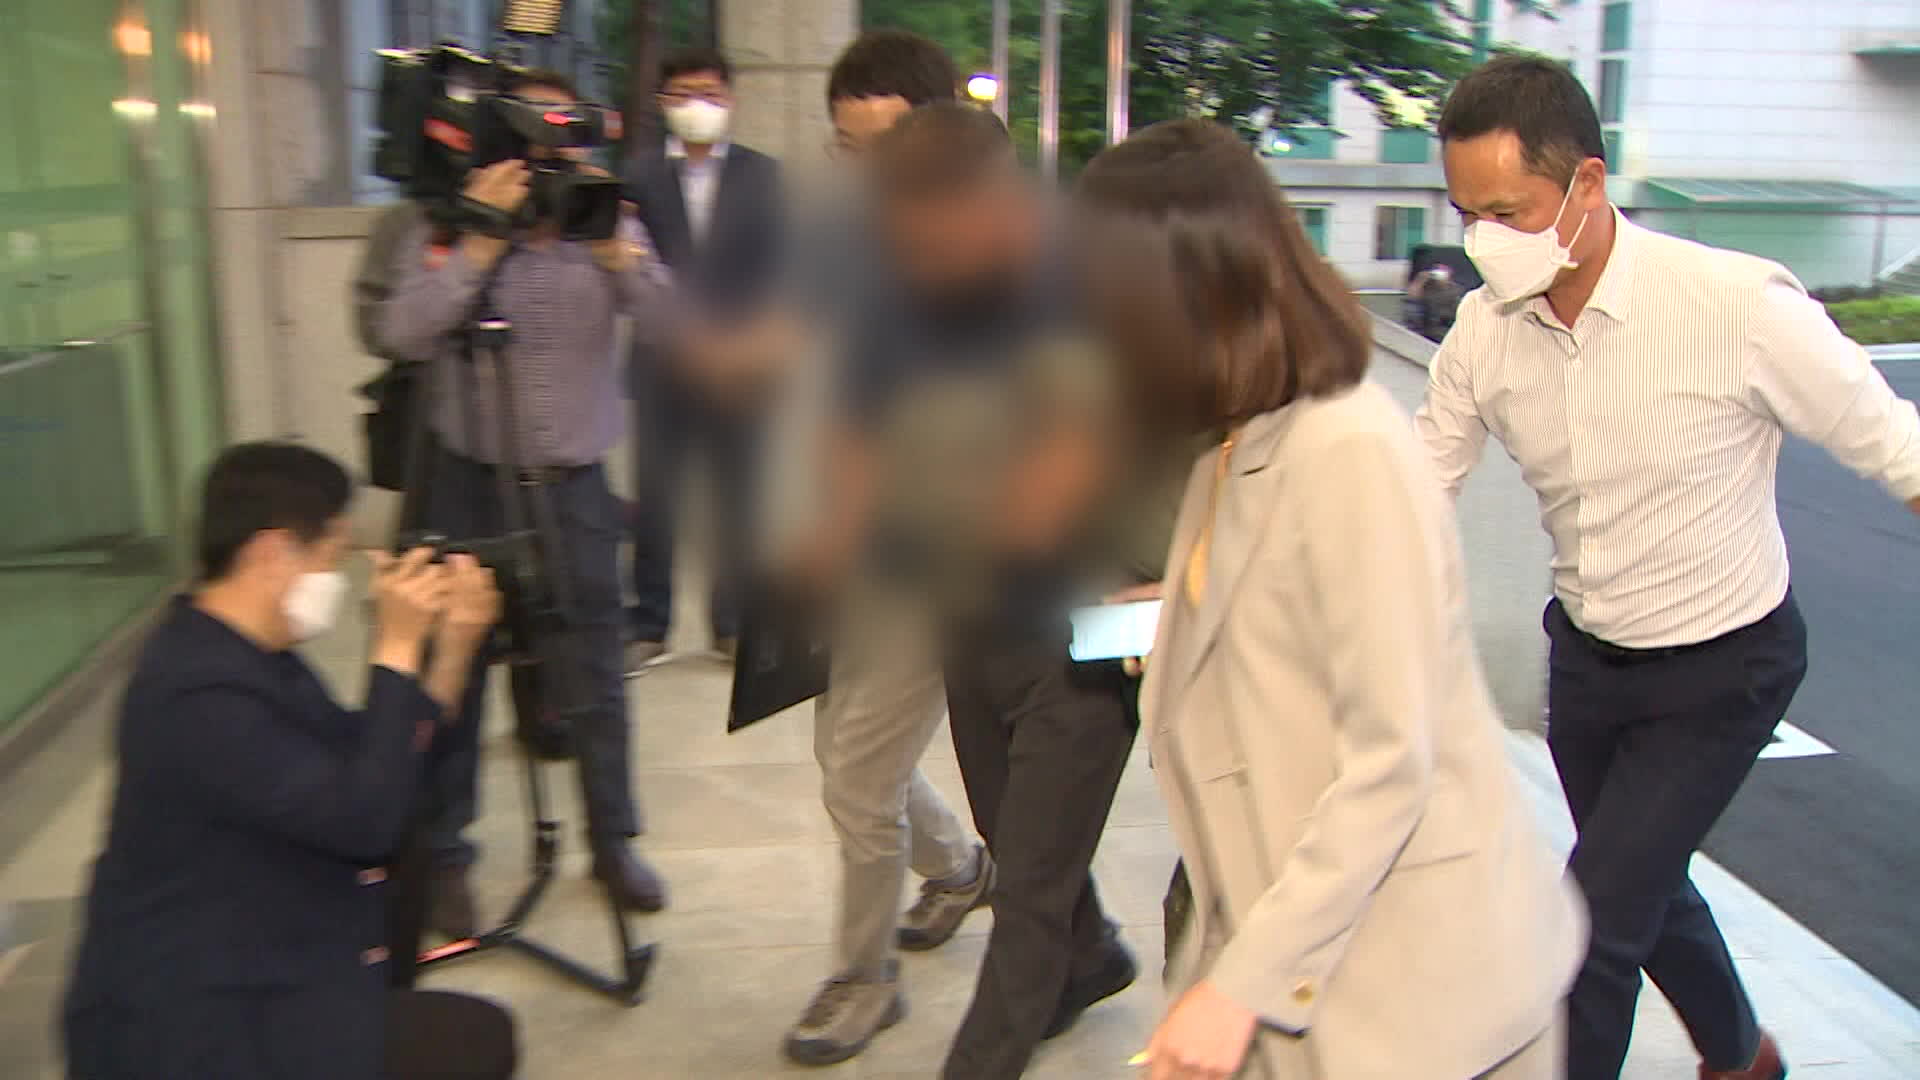 극단적 선택을 한 공군 부사관을 성추행한 혐의를 받는 장 모 중사가 지난 2일 구속영장실질심사를 받기 위해 국방부 보통군사법원에 들어서고 있다.